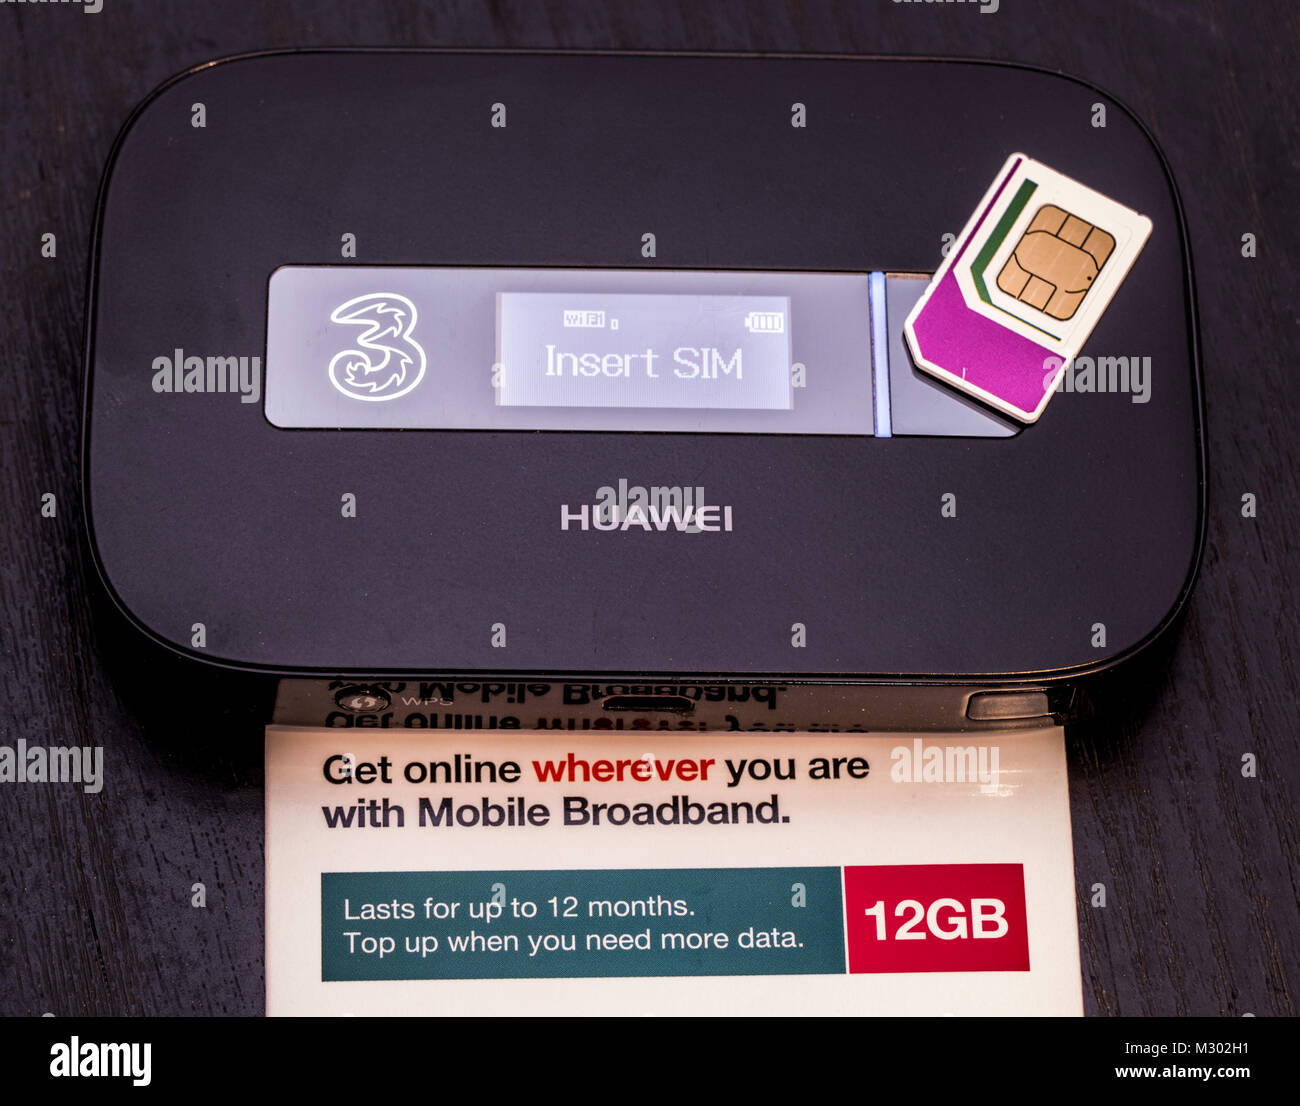 Drei Data-SIM-Karte mit 12 GB an Daten, die für 12 Monate dauert, auf einem  Huawei mobile WLAN-Router, UMTS-Gerät. England, UK Stockfotografie - Alamy